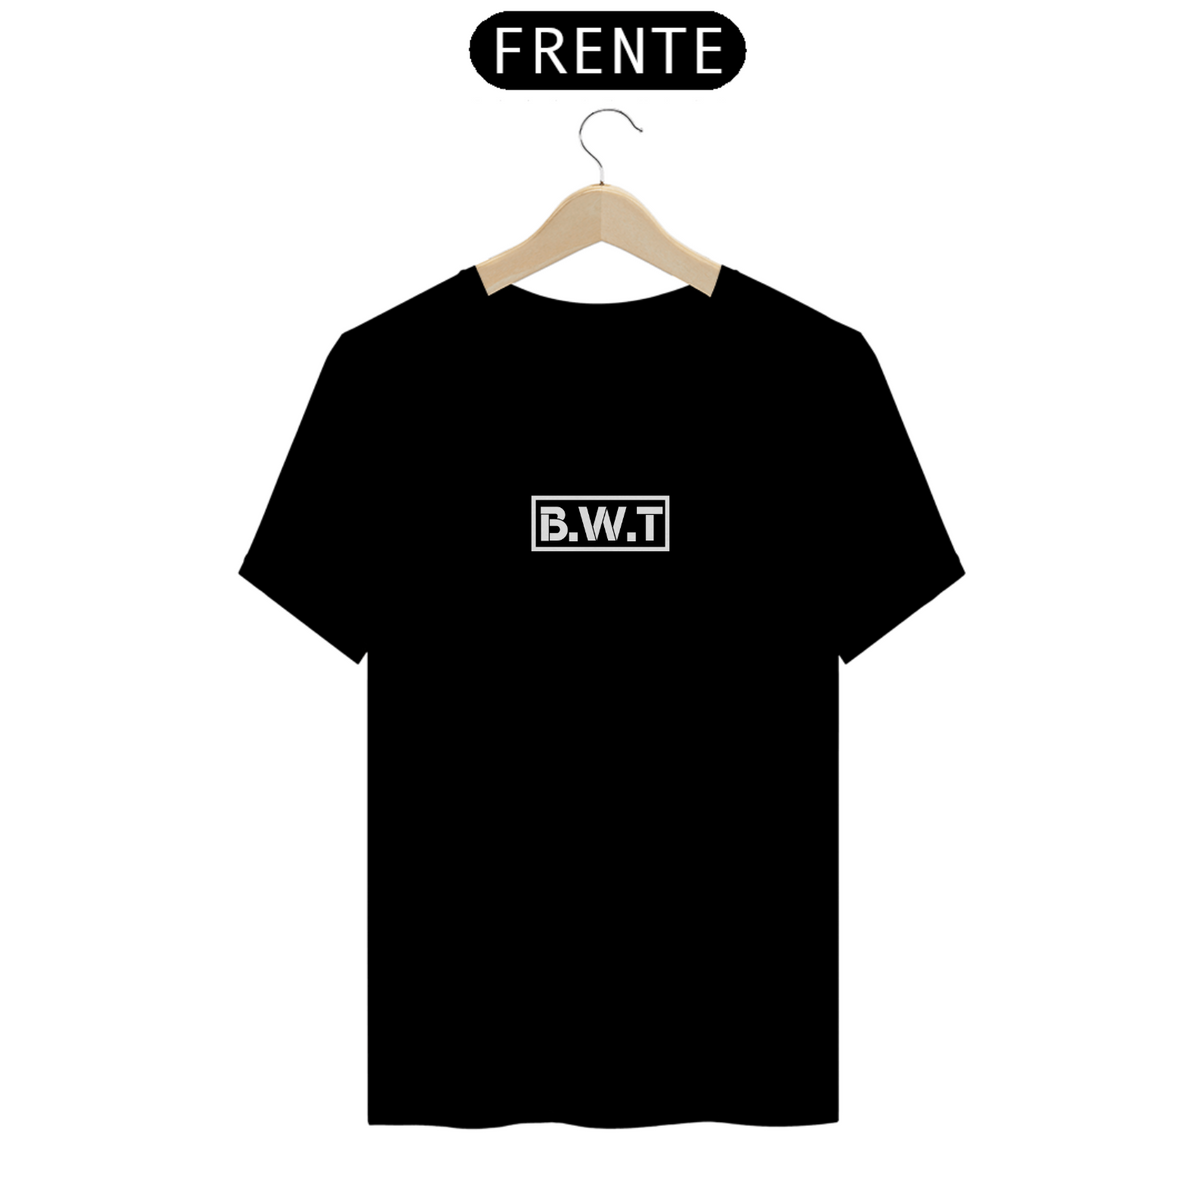 Nome do produto: Camiseta Basic BWT - escrita Branca